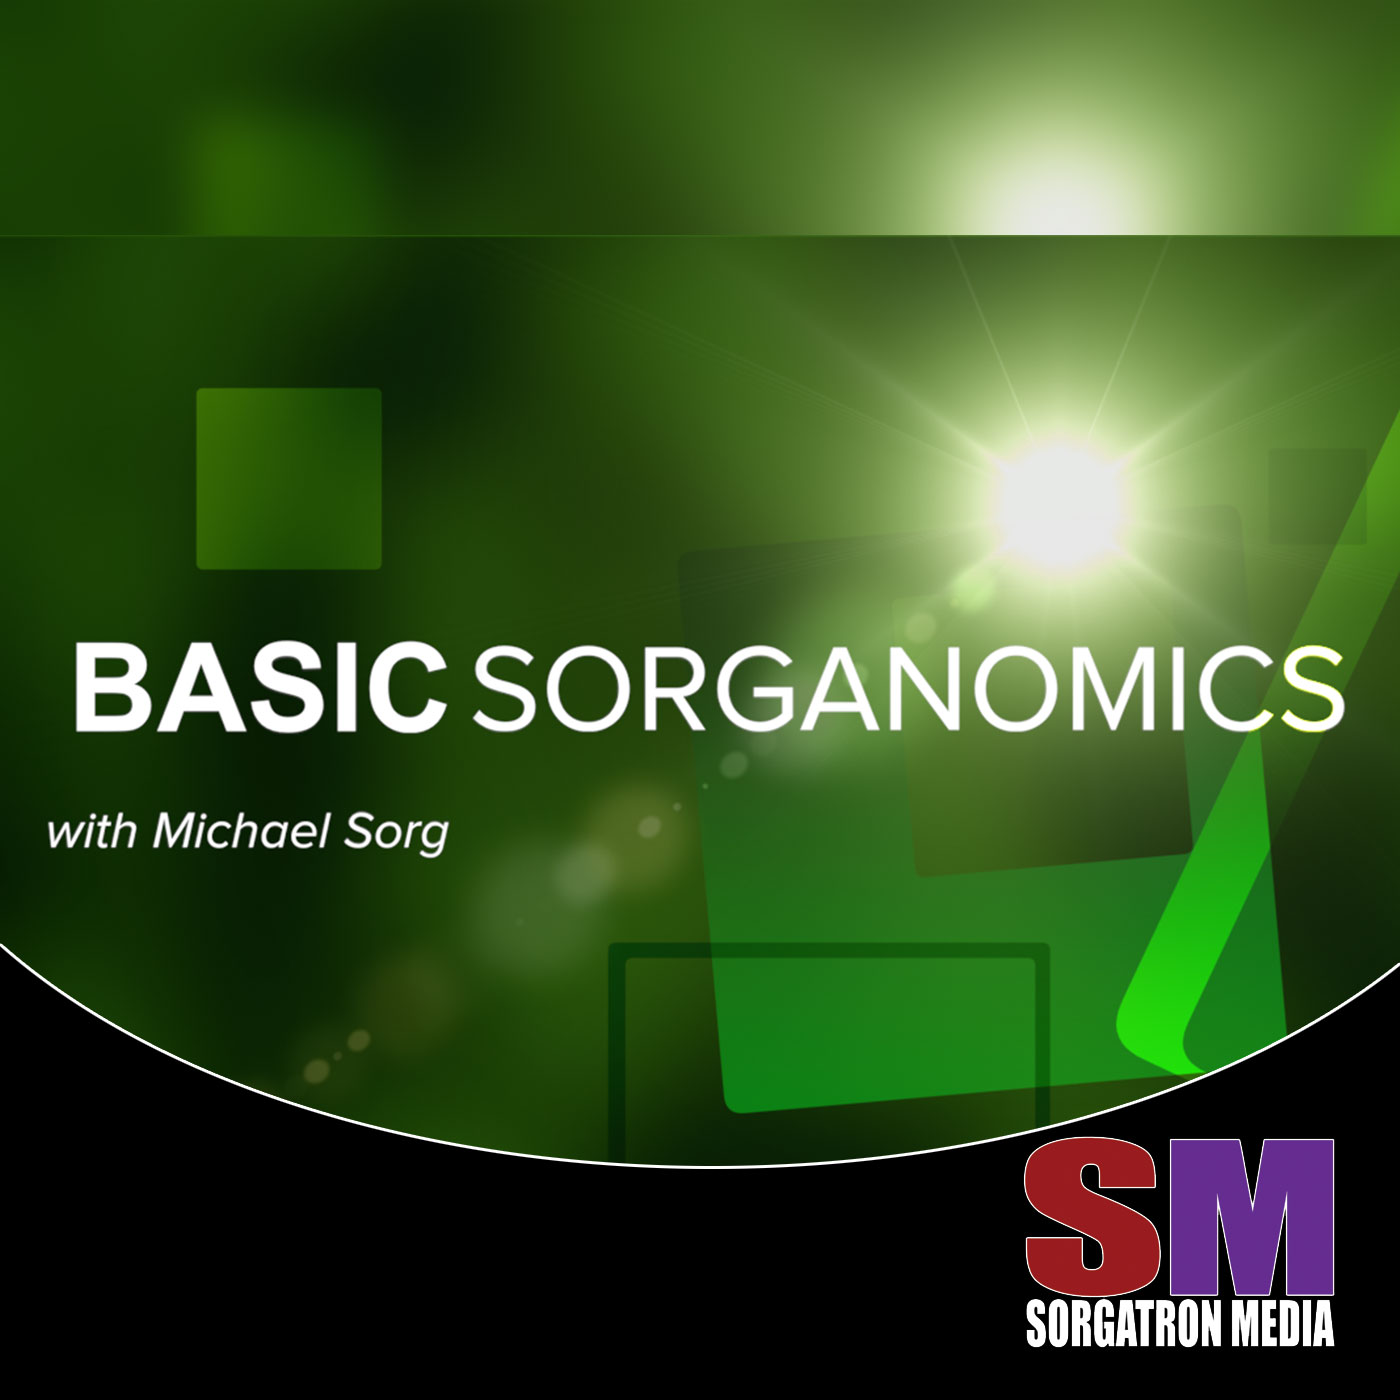 Basic Sorganomics: Going Viral